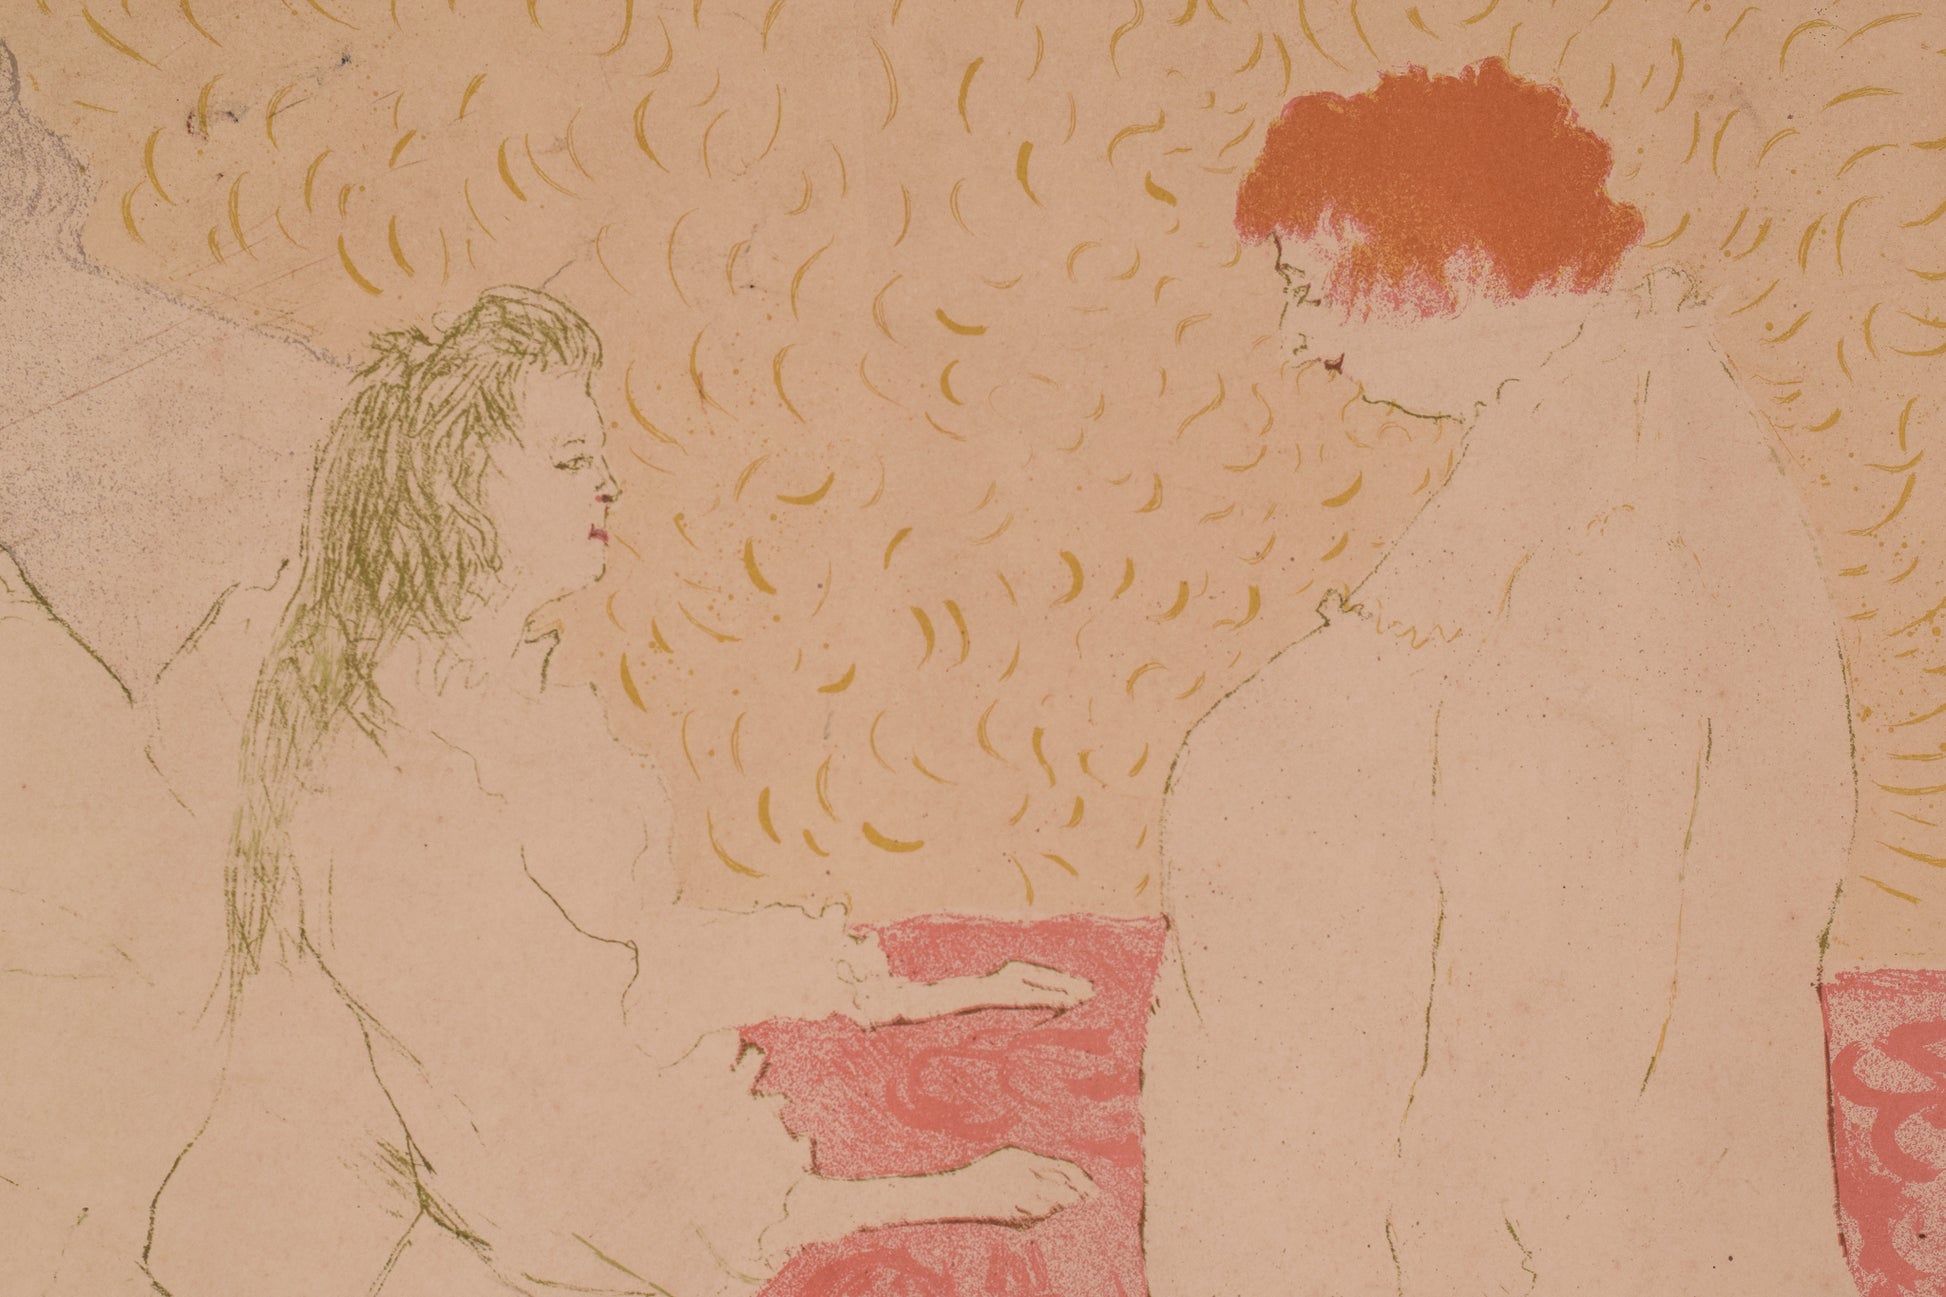 Henri de Toulouse-Lautrec - Woman in Bed, Profile (Lithograph)